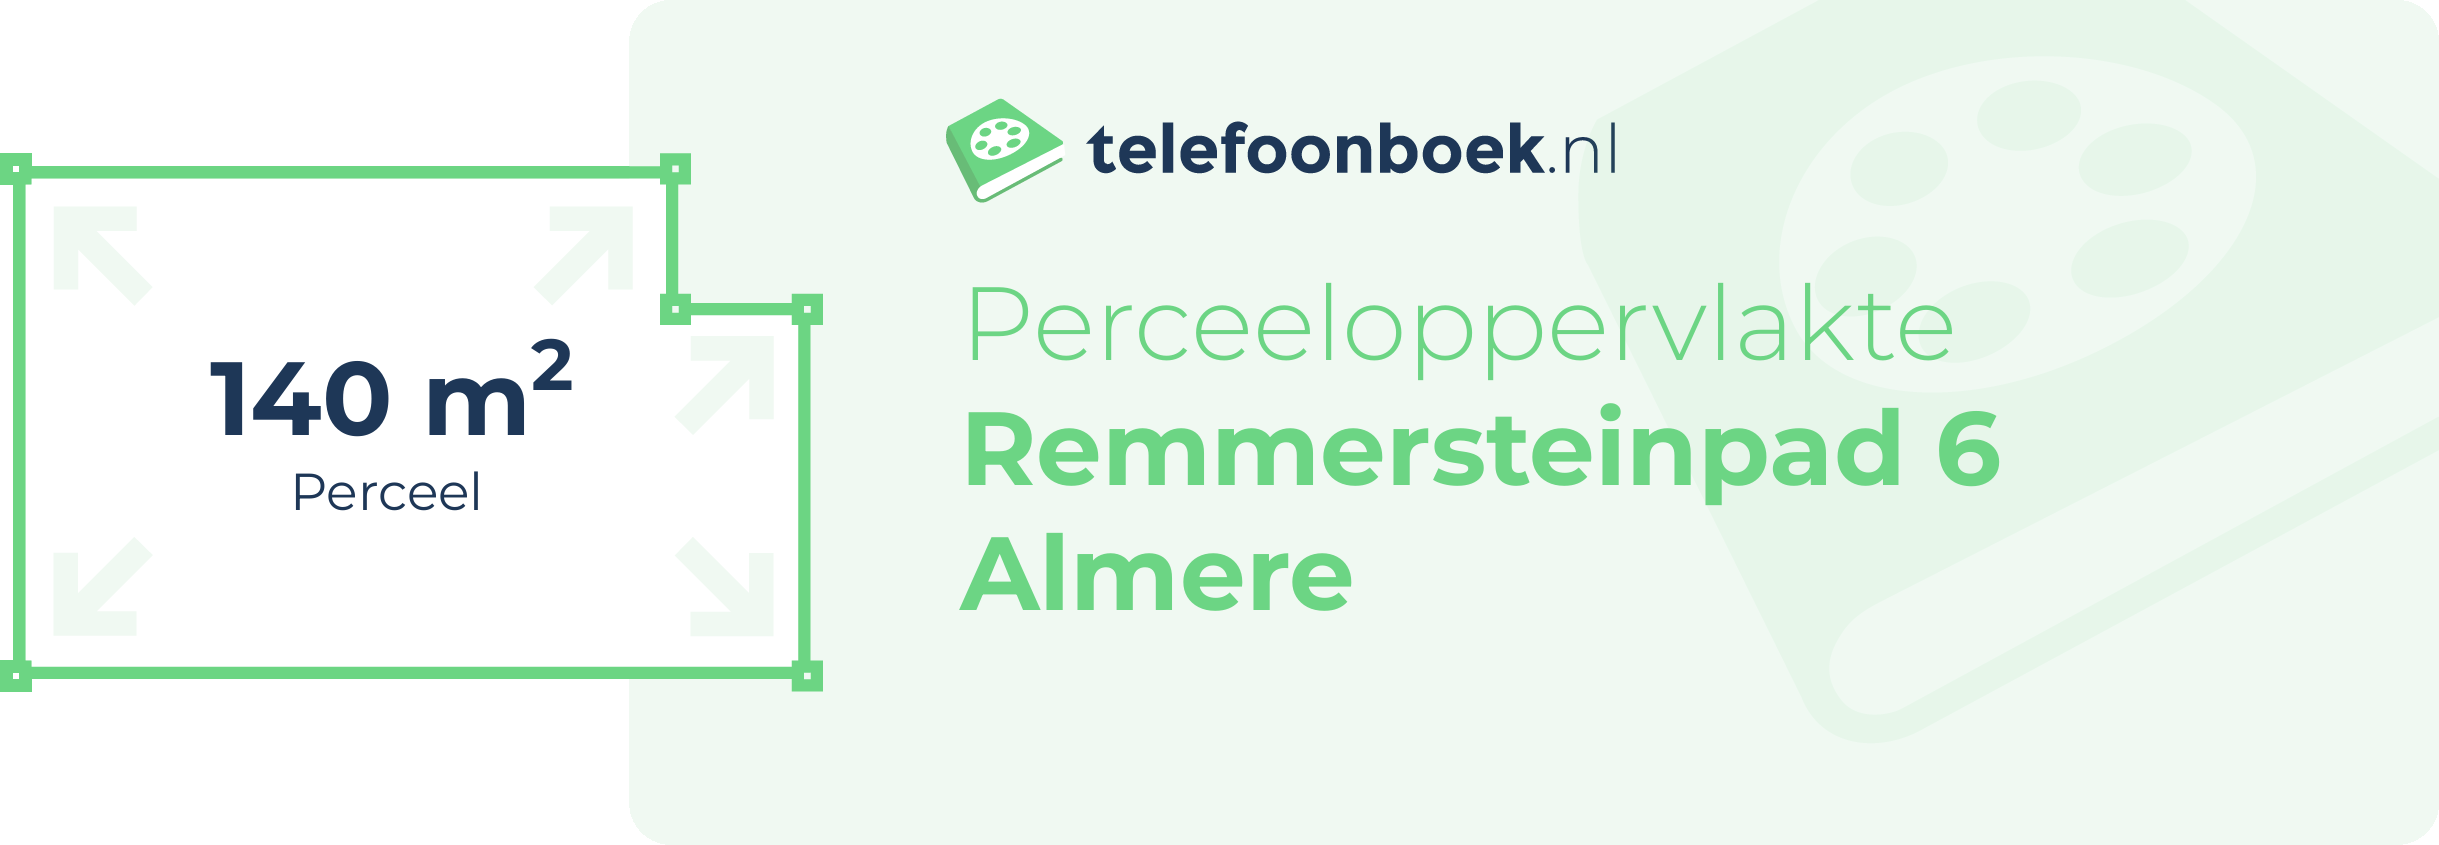 Perceeloppervlakte Remmersteinpad 6 Almere